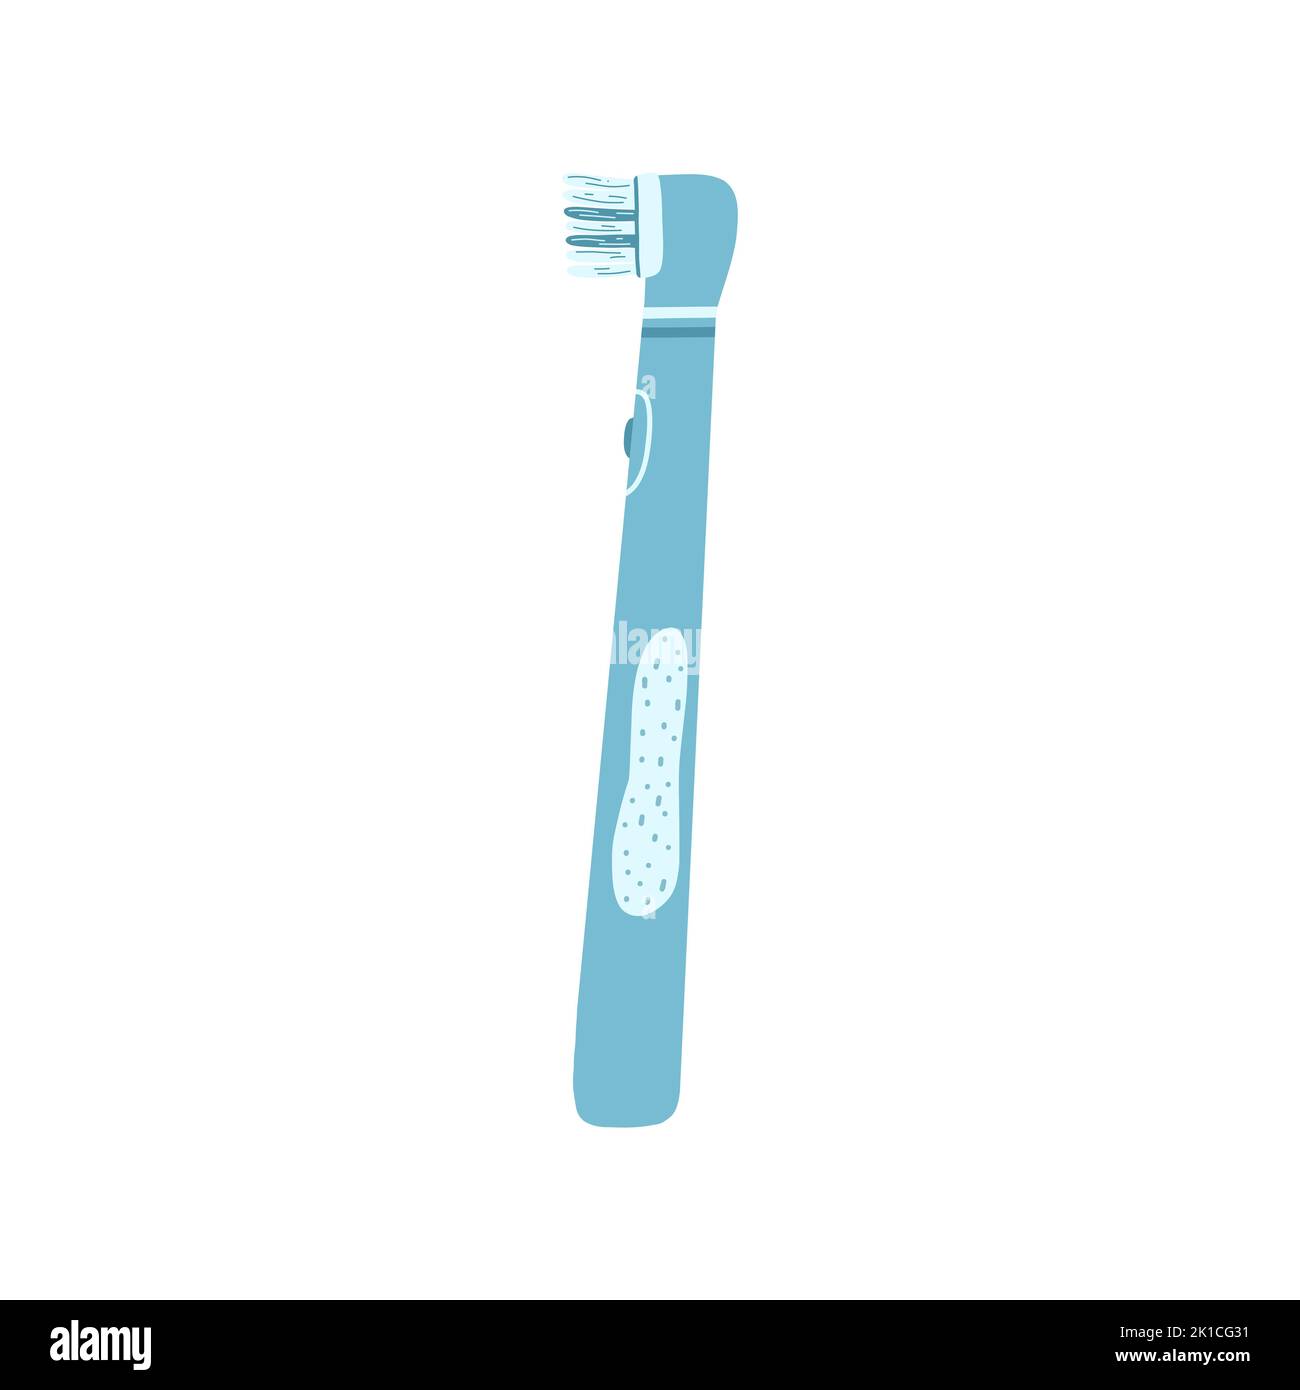 Spazzolino elettrico disegnato a mano per spazzolare i denti in stile cartoon piatto. Illustrazione vettoriale di forniture dentali, concetto di cura dentale, igiene orale Illustrazione Vettoriale